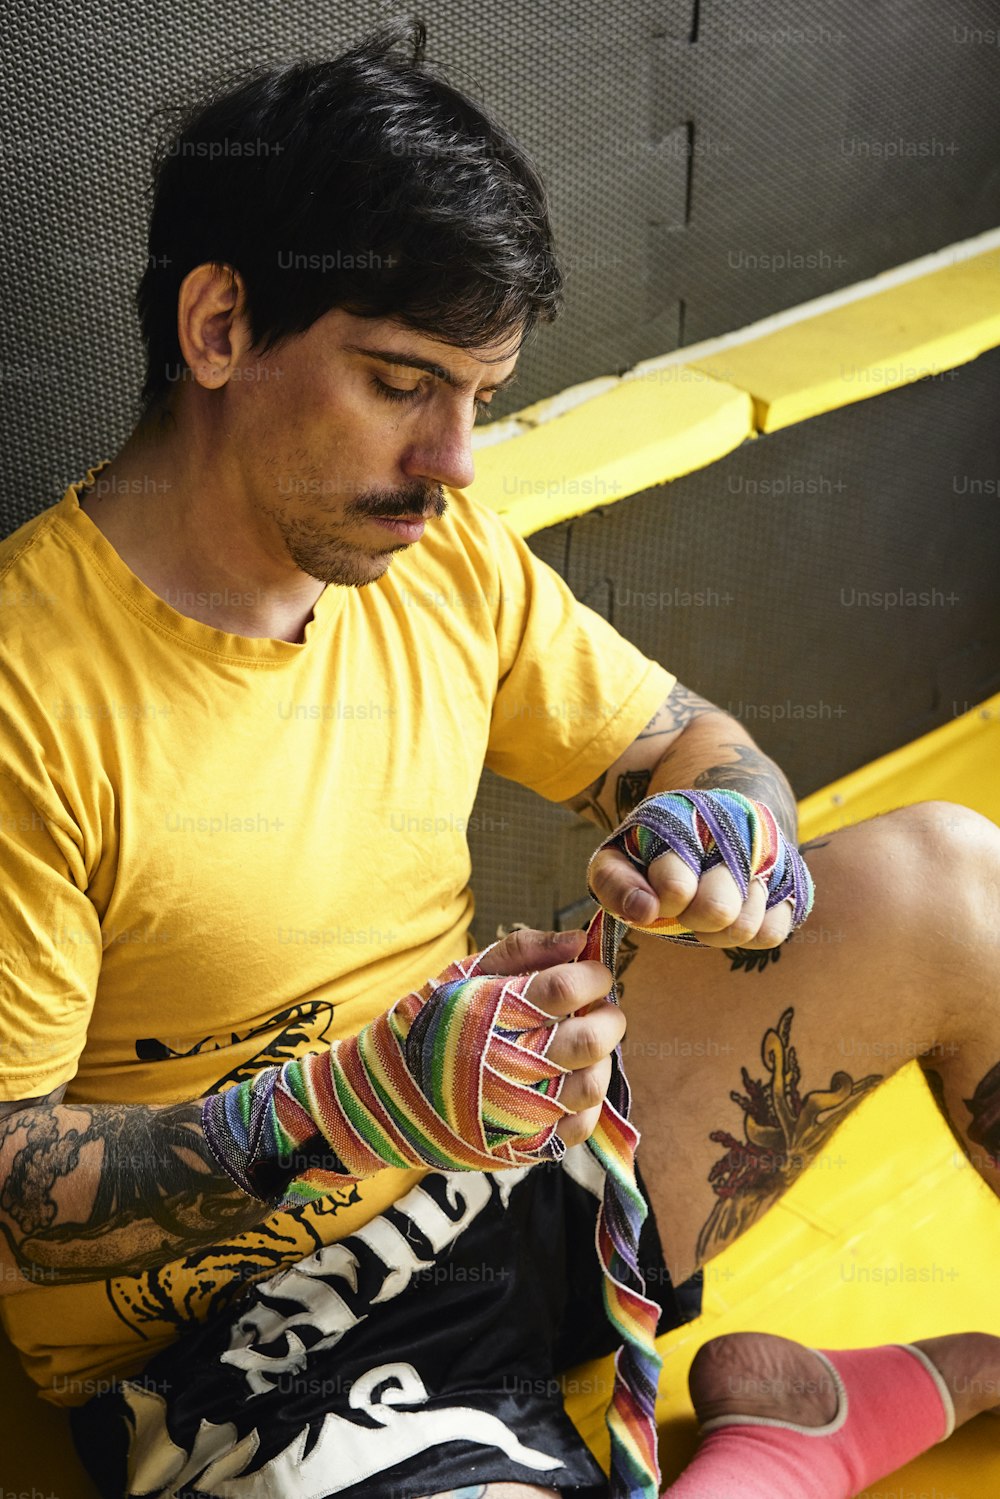 Un uomo seduto su una panchina gialla che tiene un paio di calzini colorati